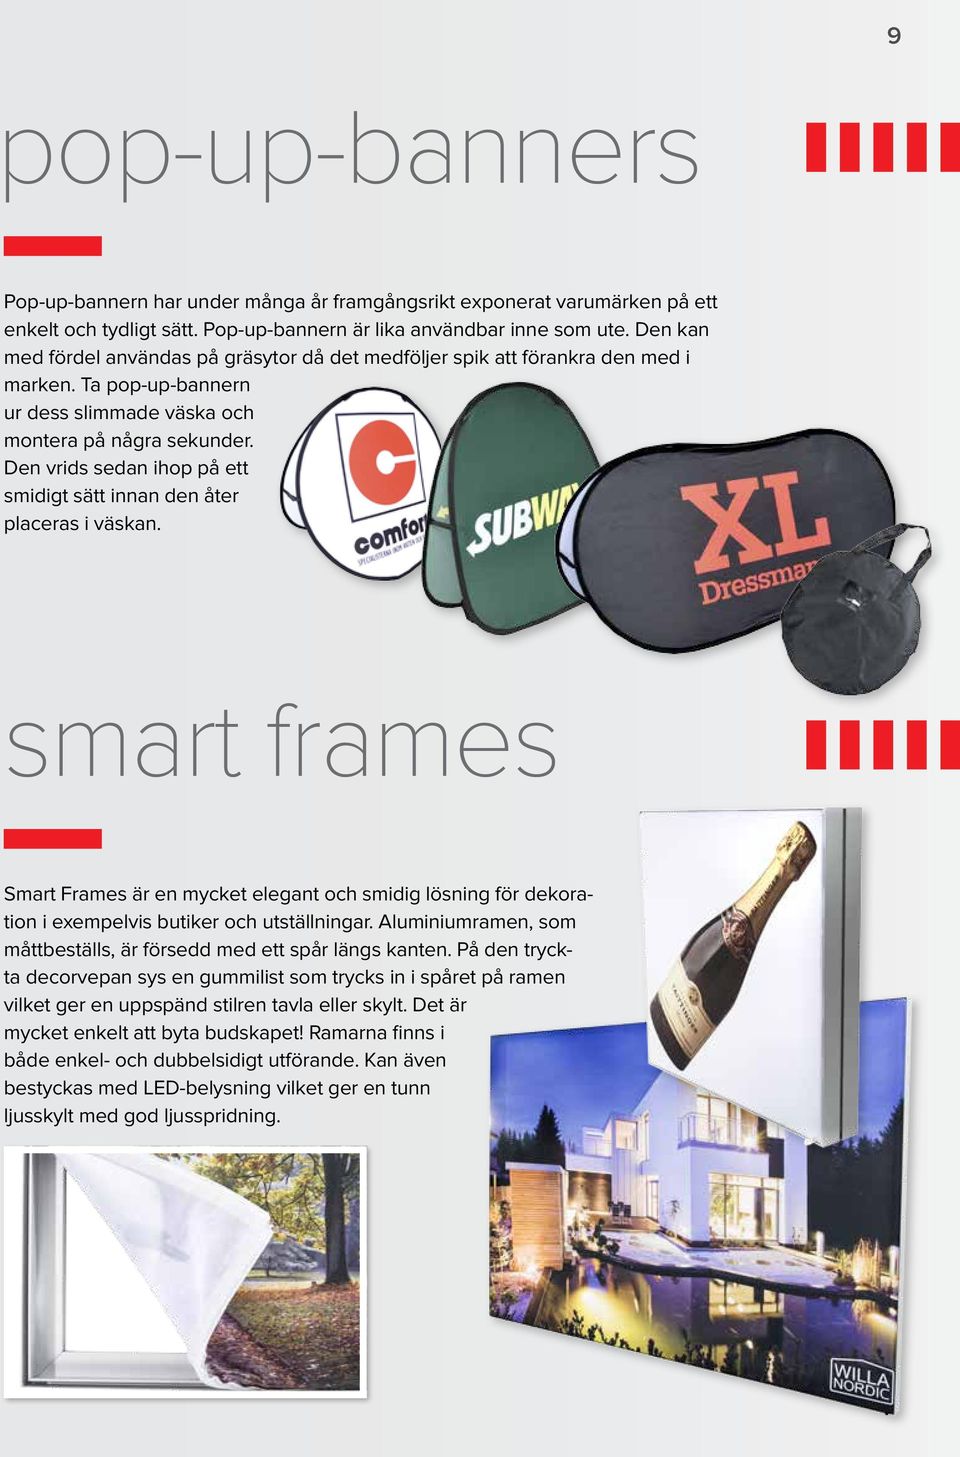 Den vrids sedan ihop på ett smidigt sätt innan den åter placeras i väskan. smart frames Smart Frames är en mycket elegant och smidig lösning för dekoration i exempelvis butiker och utställningar.